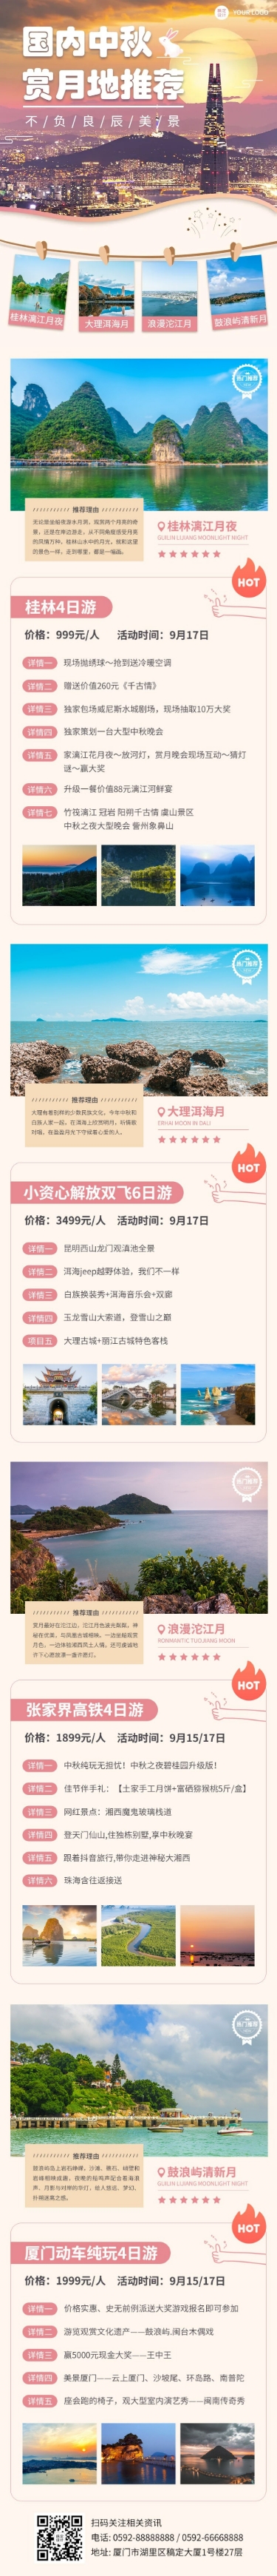 中秋节旅游景点推荐长图